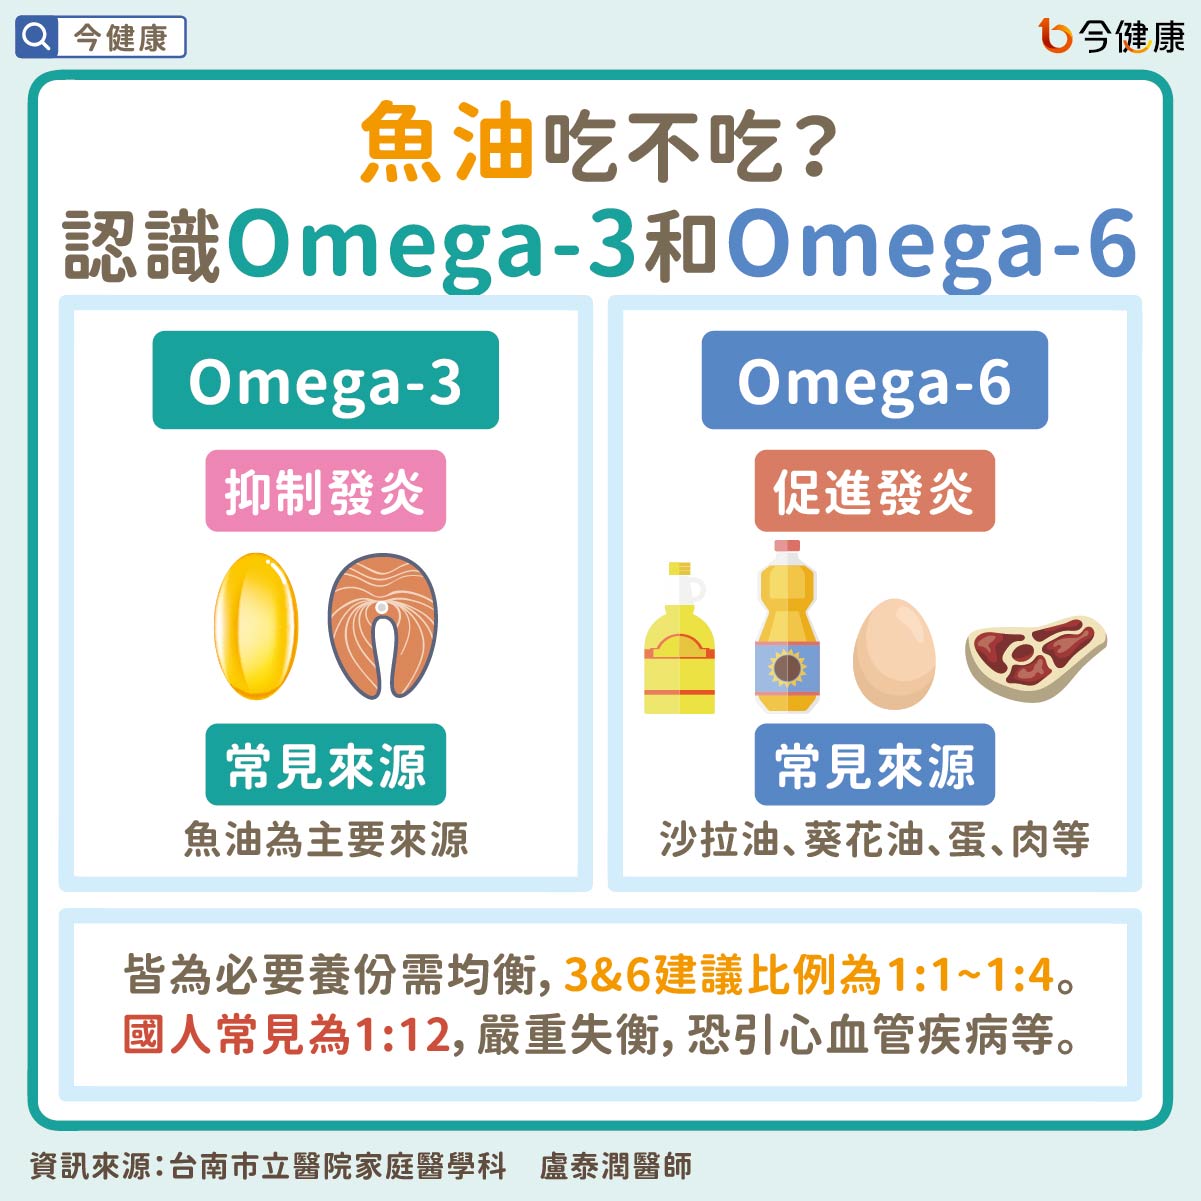 #魚油 #Omega-3 #Omega-6 #保健食品 #營養食品 #盧泰潤醫師